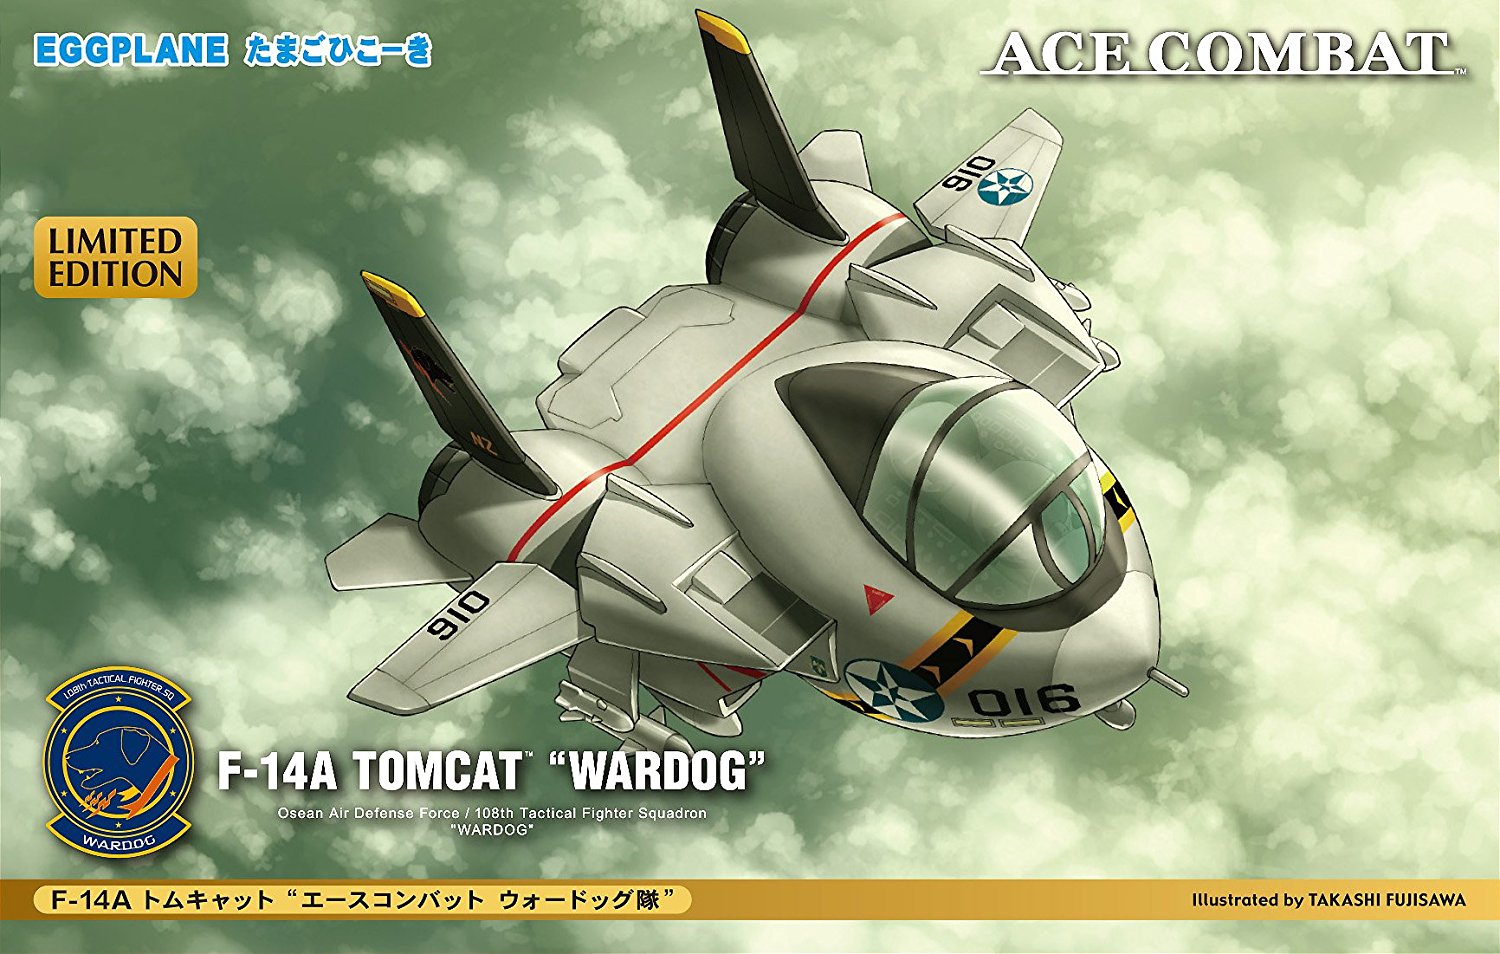 F-14A Tomcat "Ace Combat Wardog Squadron"